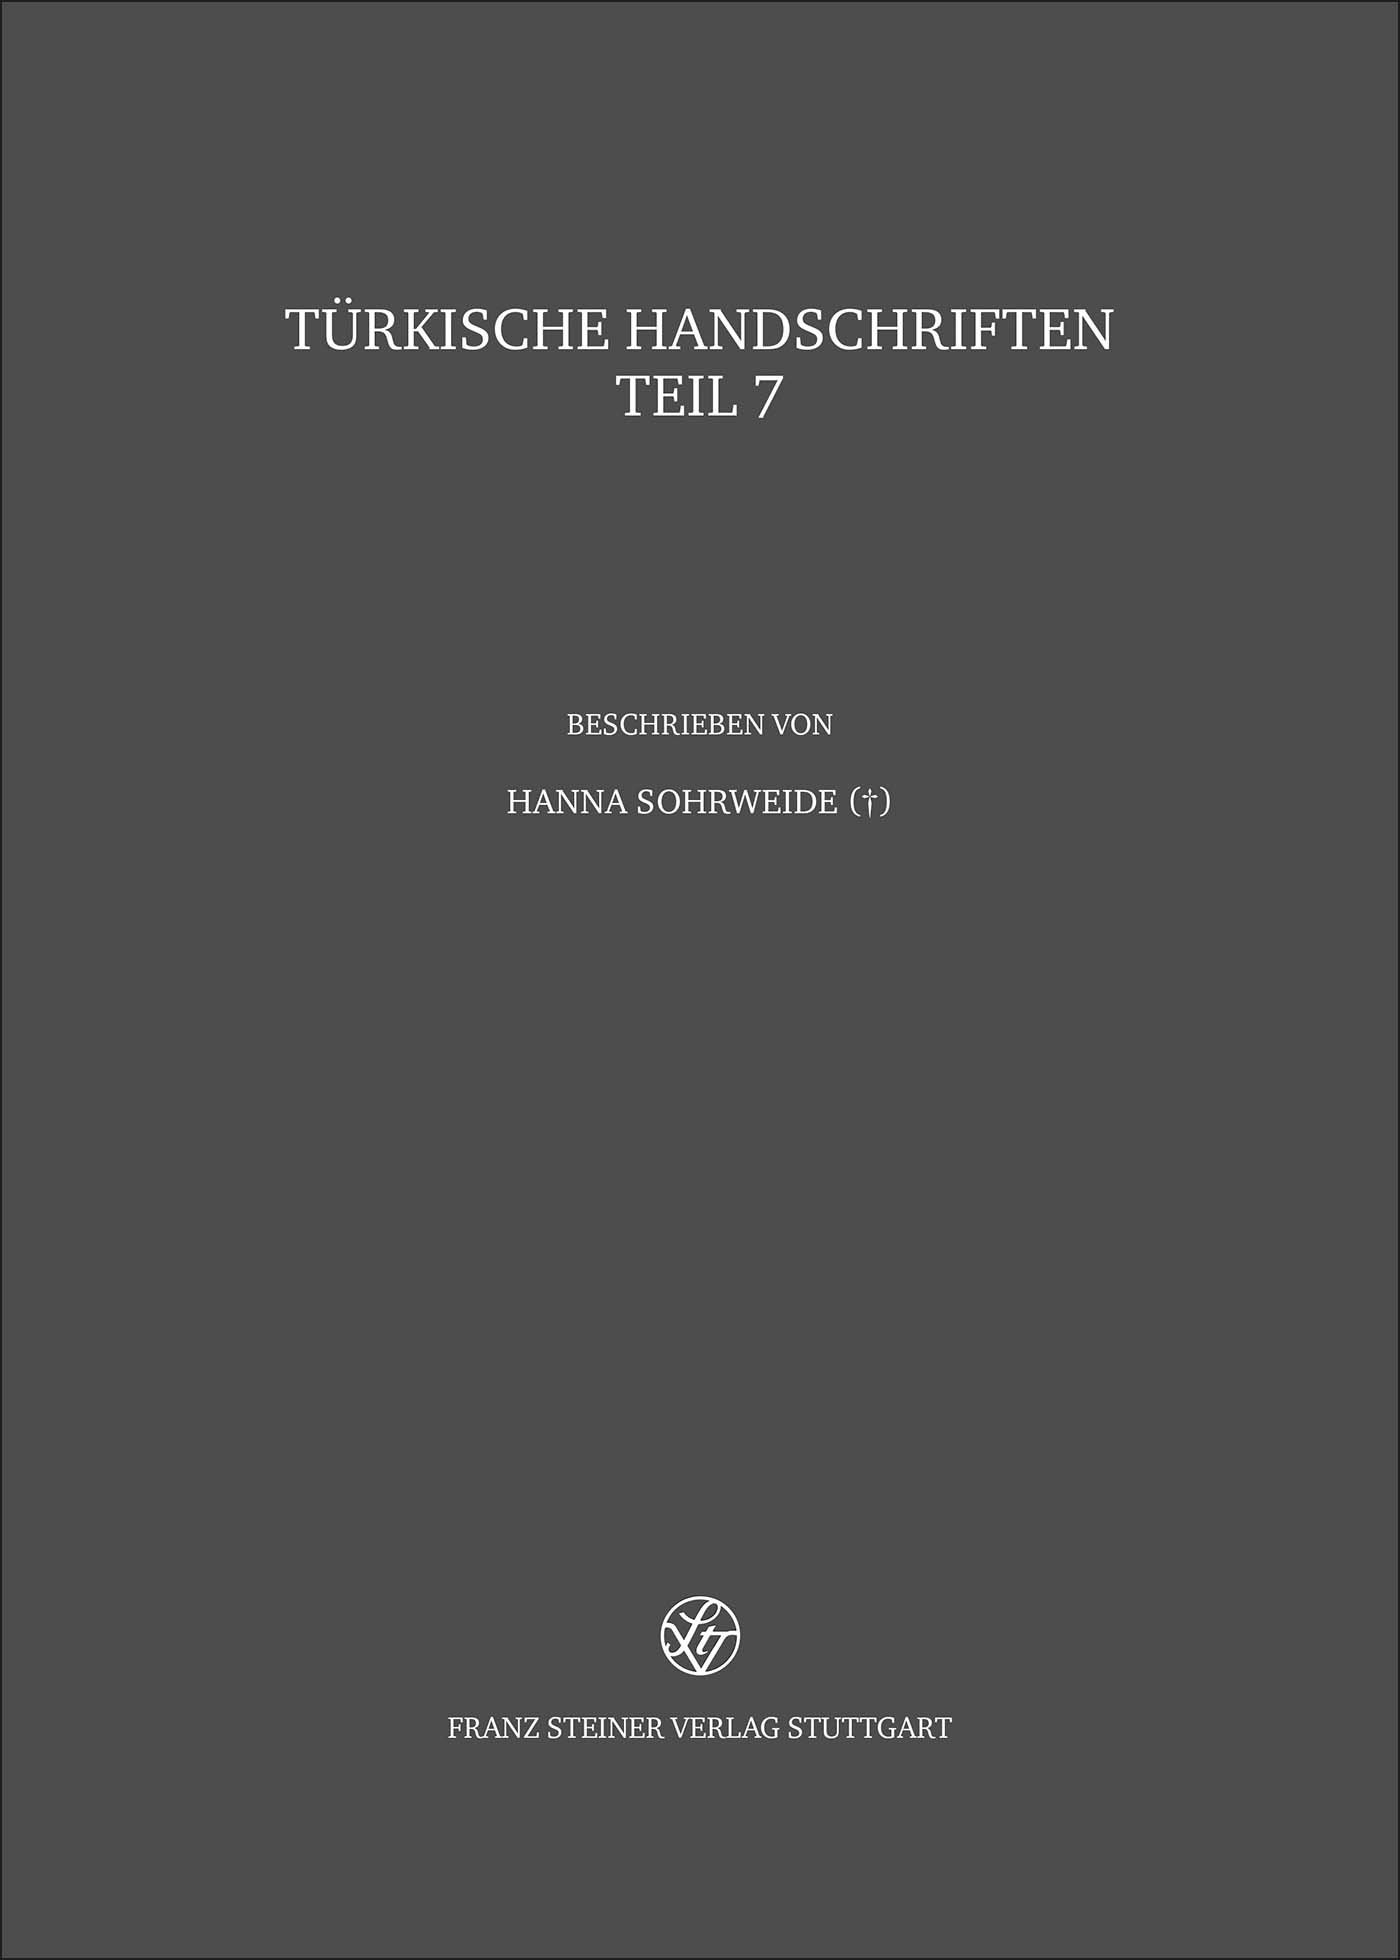 Türkische Handschriften der Staats- und Universitätsbibliothek Hamburg und der Staatsbibliothek zu Berlin – Preußischer Kulturbesitz